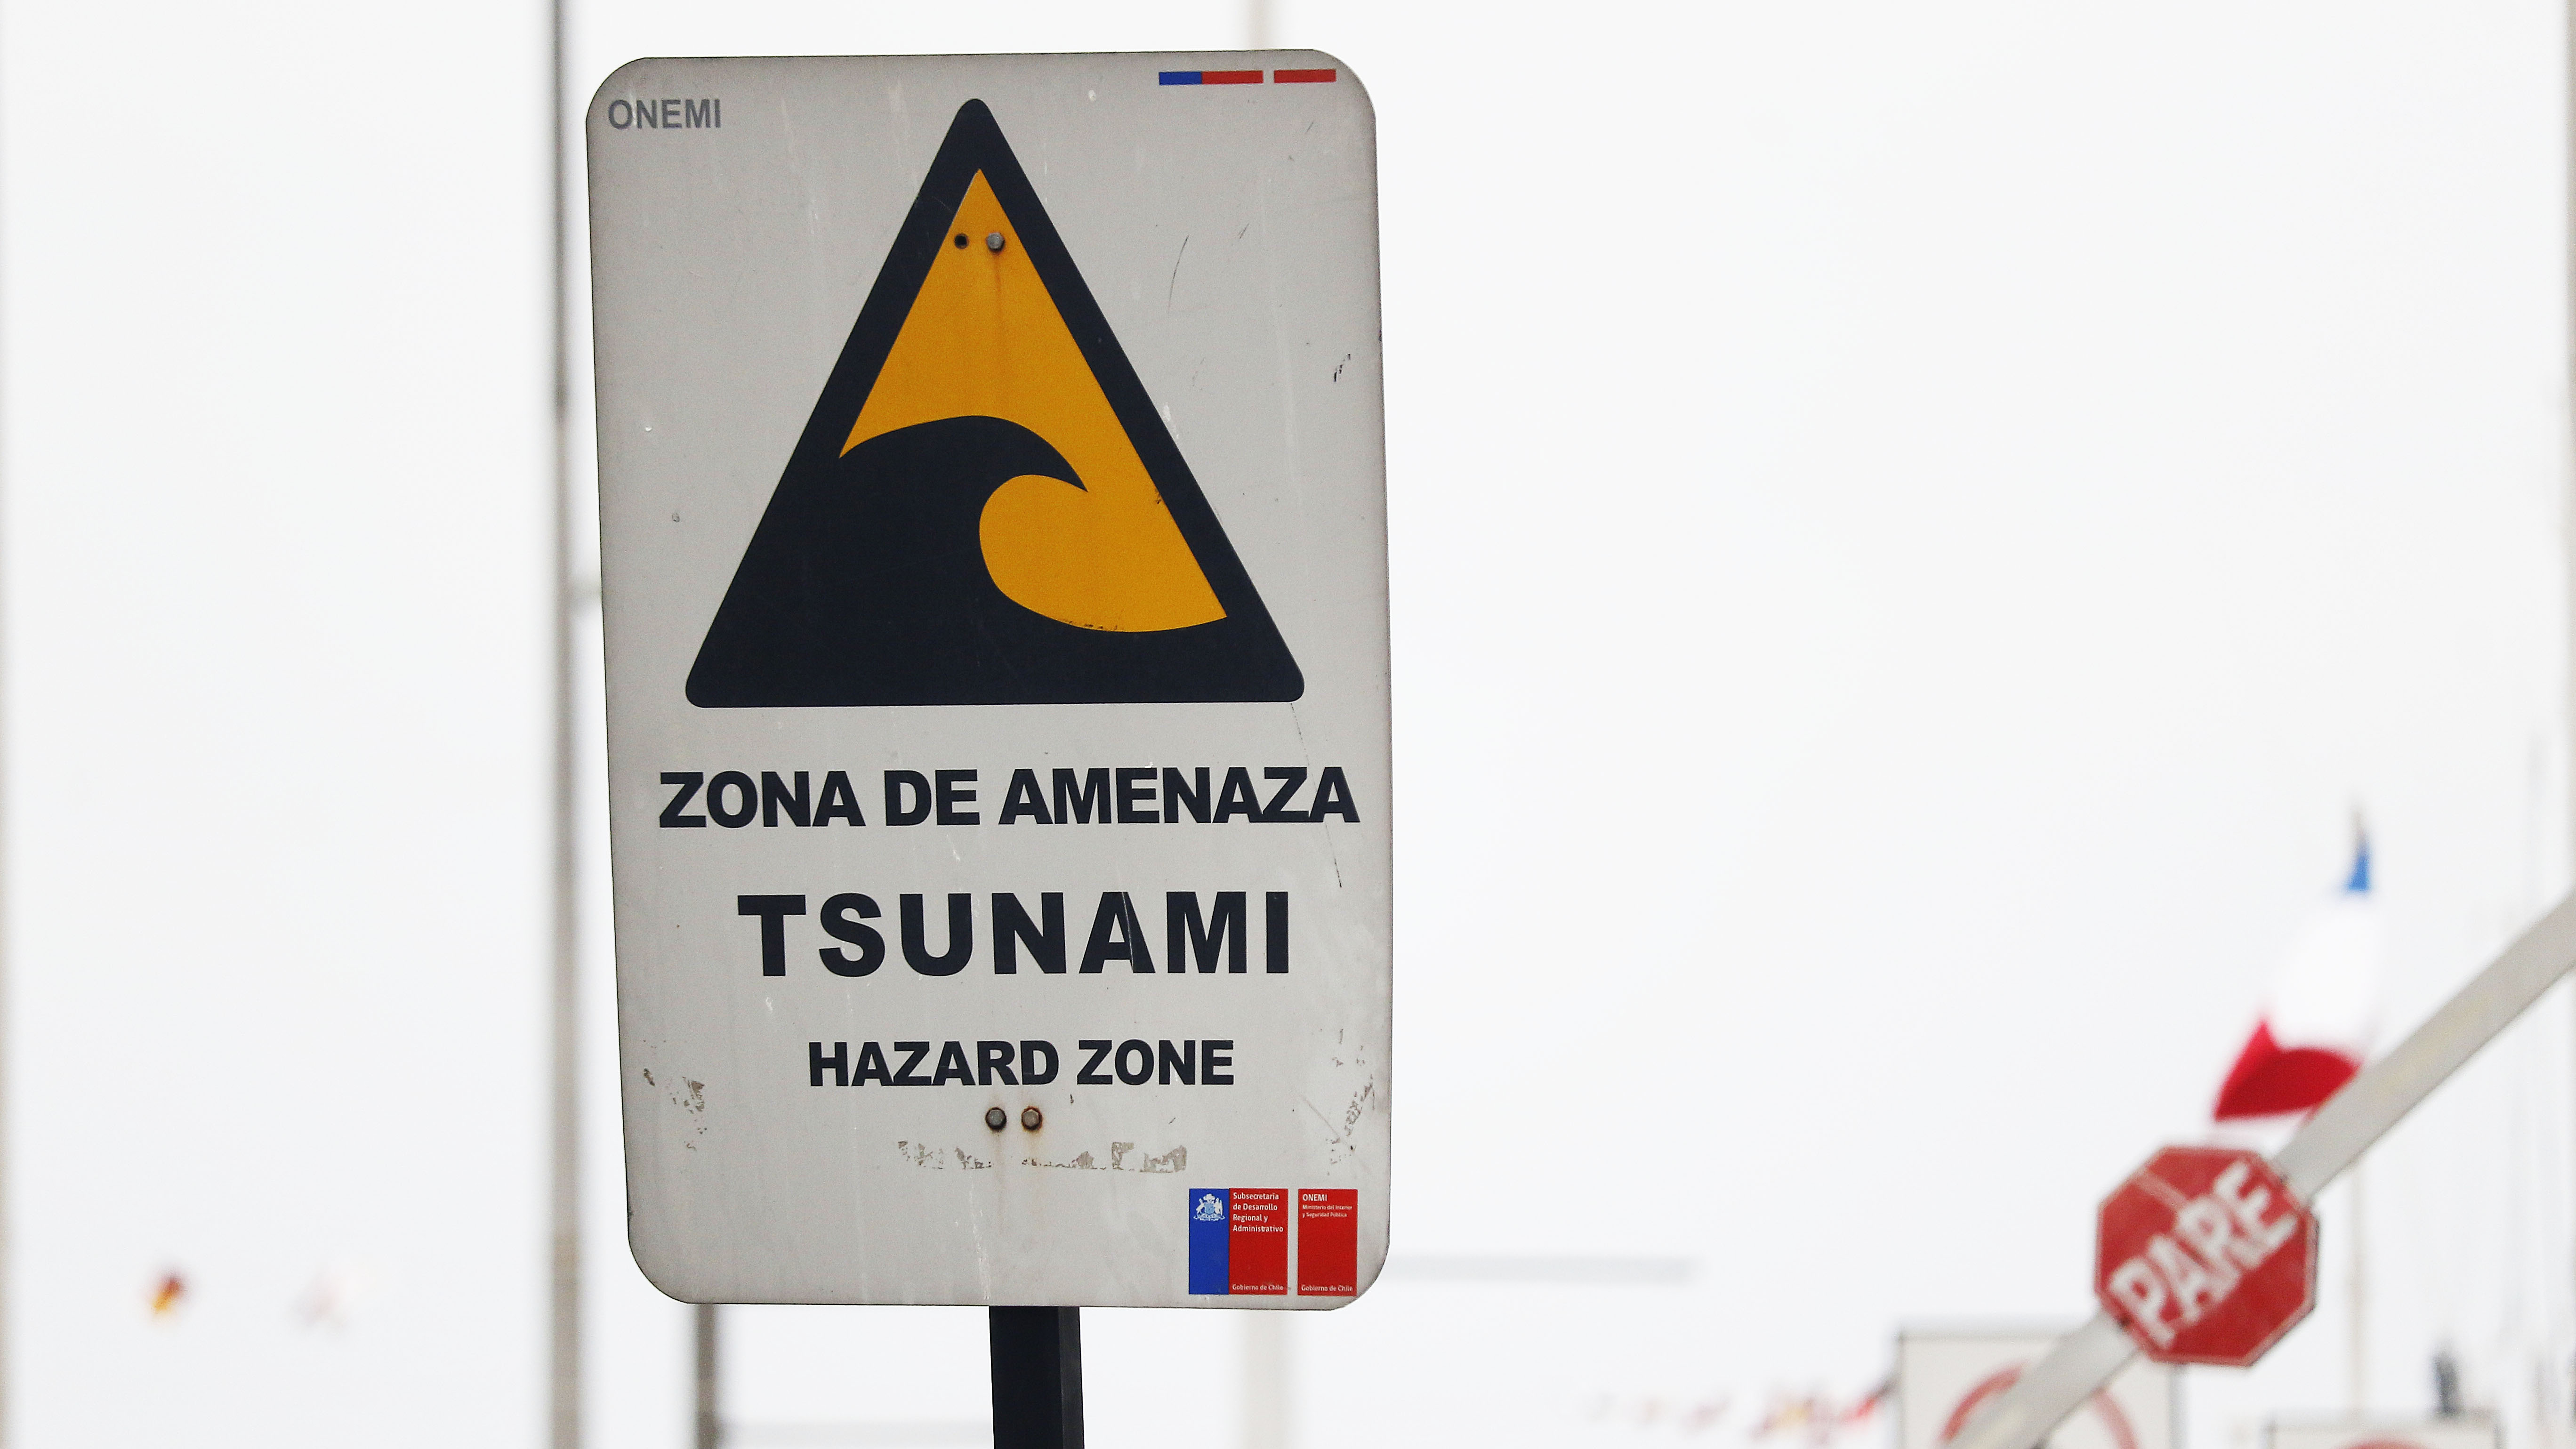 Tematicas Señaleticas Evacuacion En Caso De Tsunami En Valparaiso. 04/09/2019